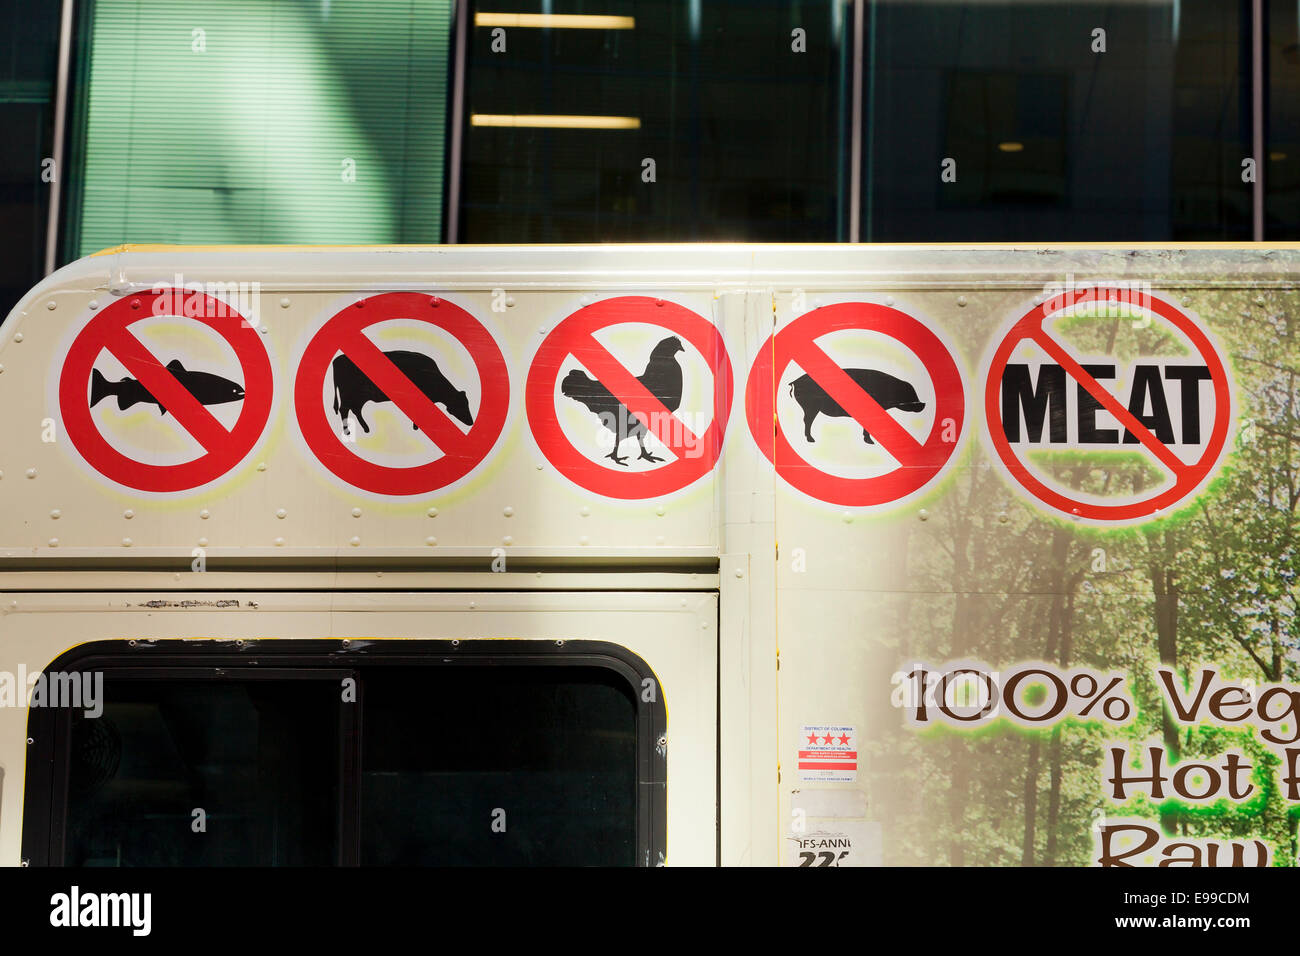 Pas de viande signes sur camion alimentaire végétalien - Washington, DC USA Banque D'Images